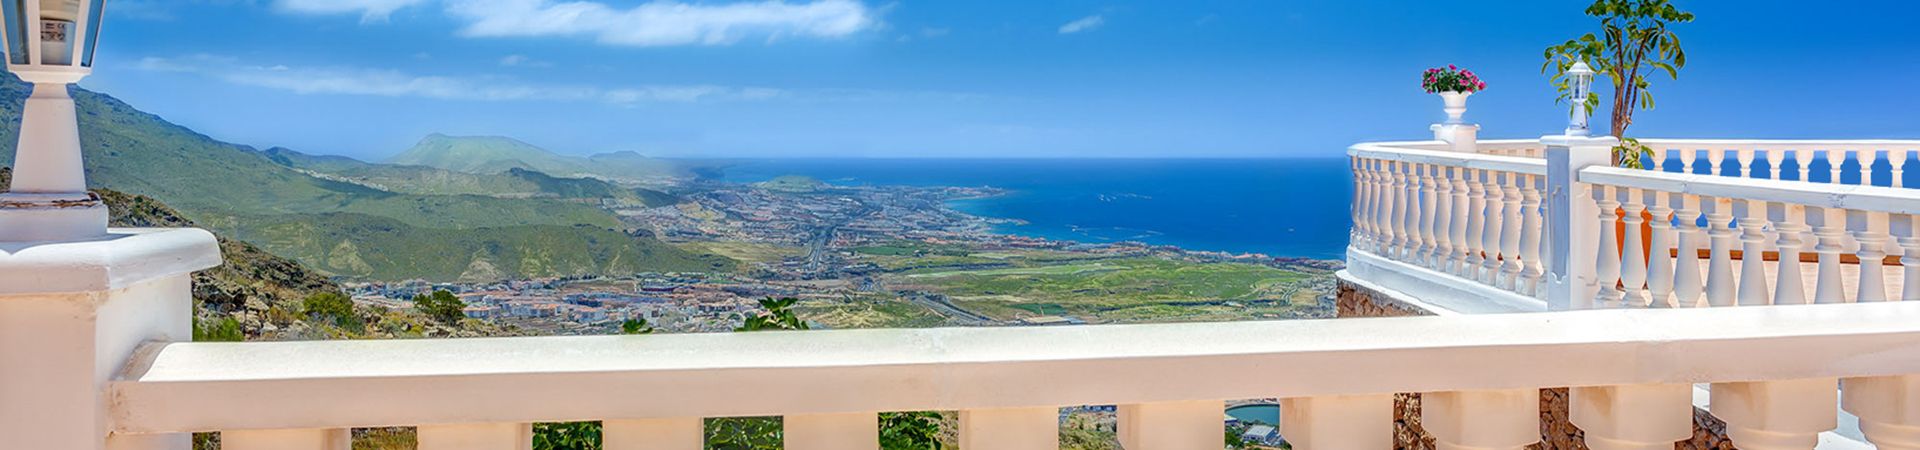 Ville di lusso in vendita a Tenerife